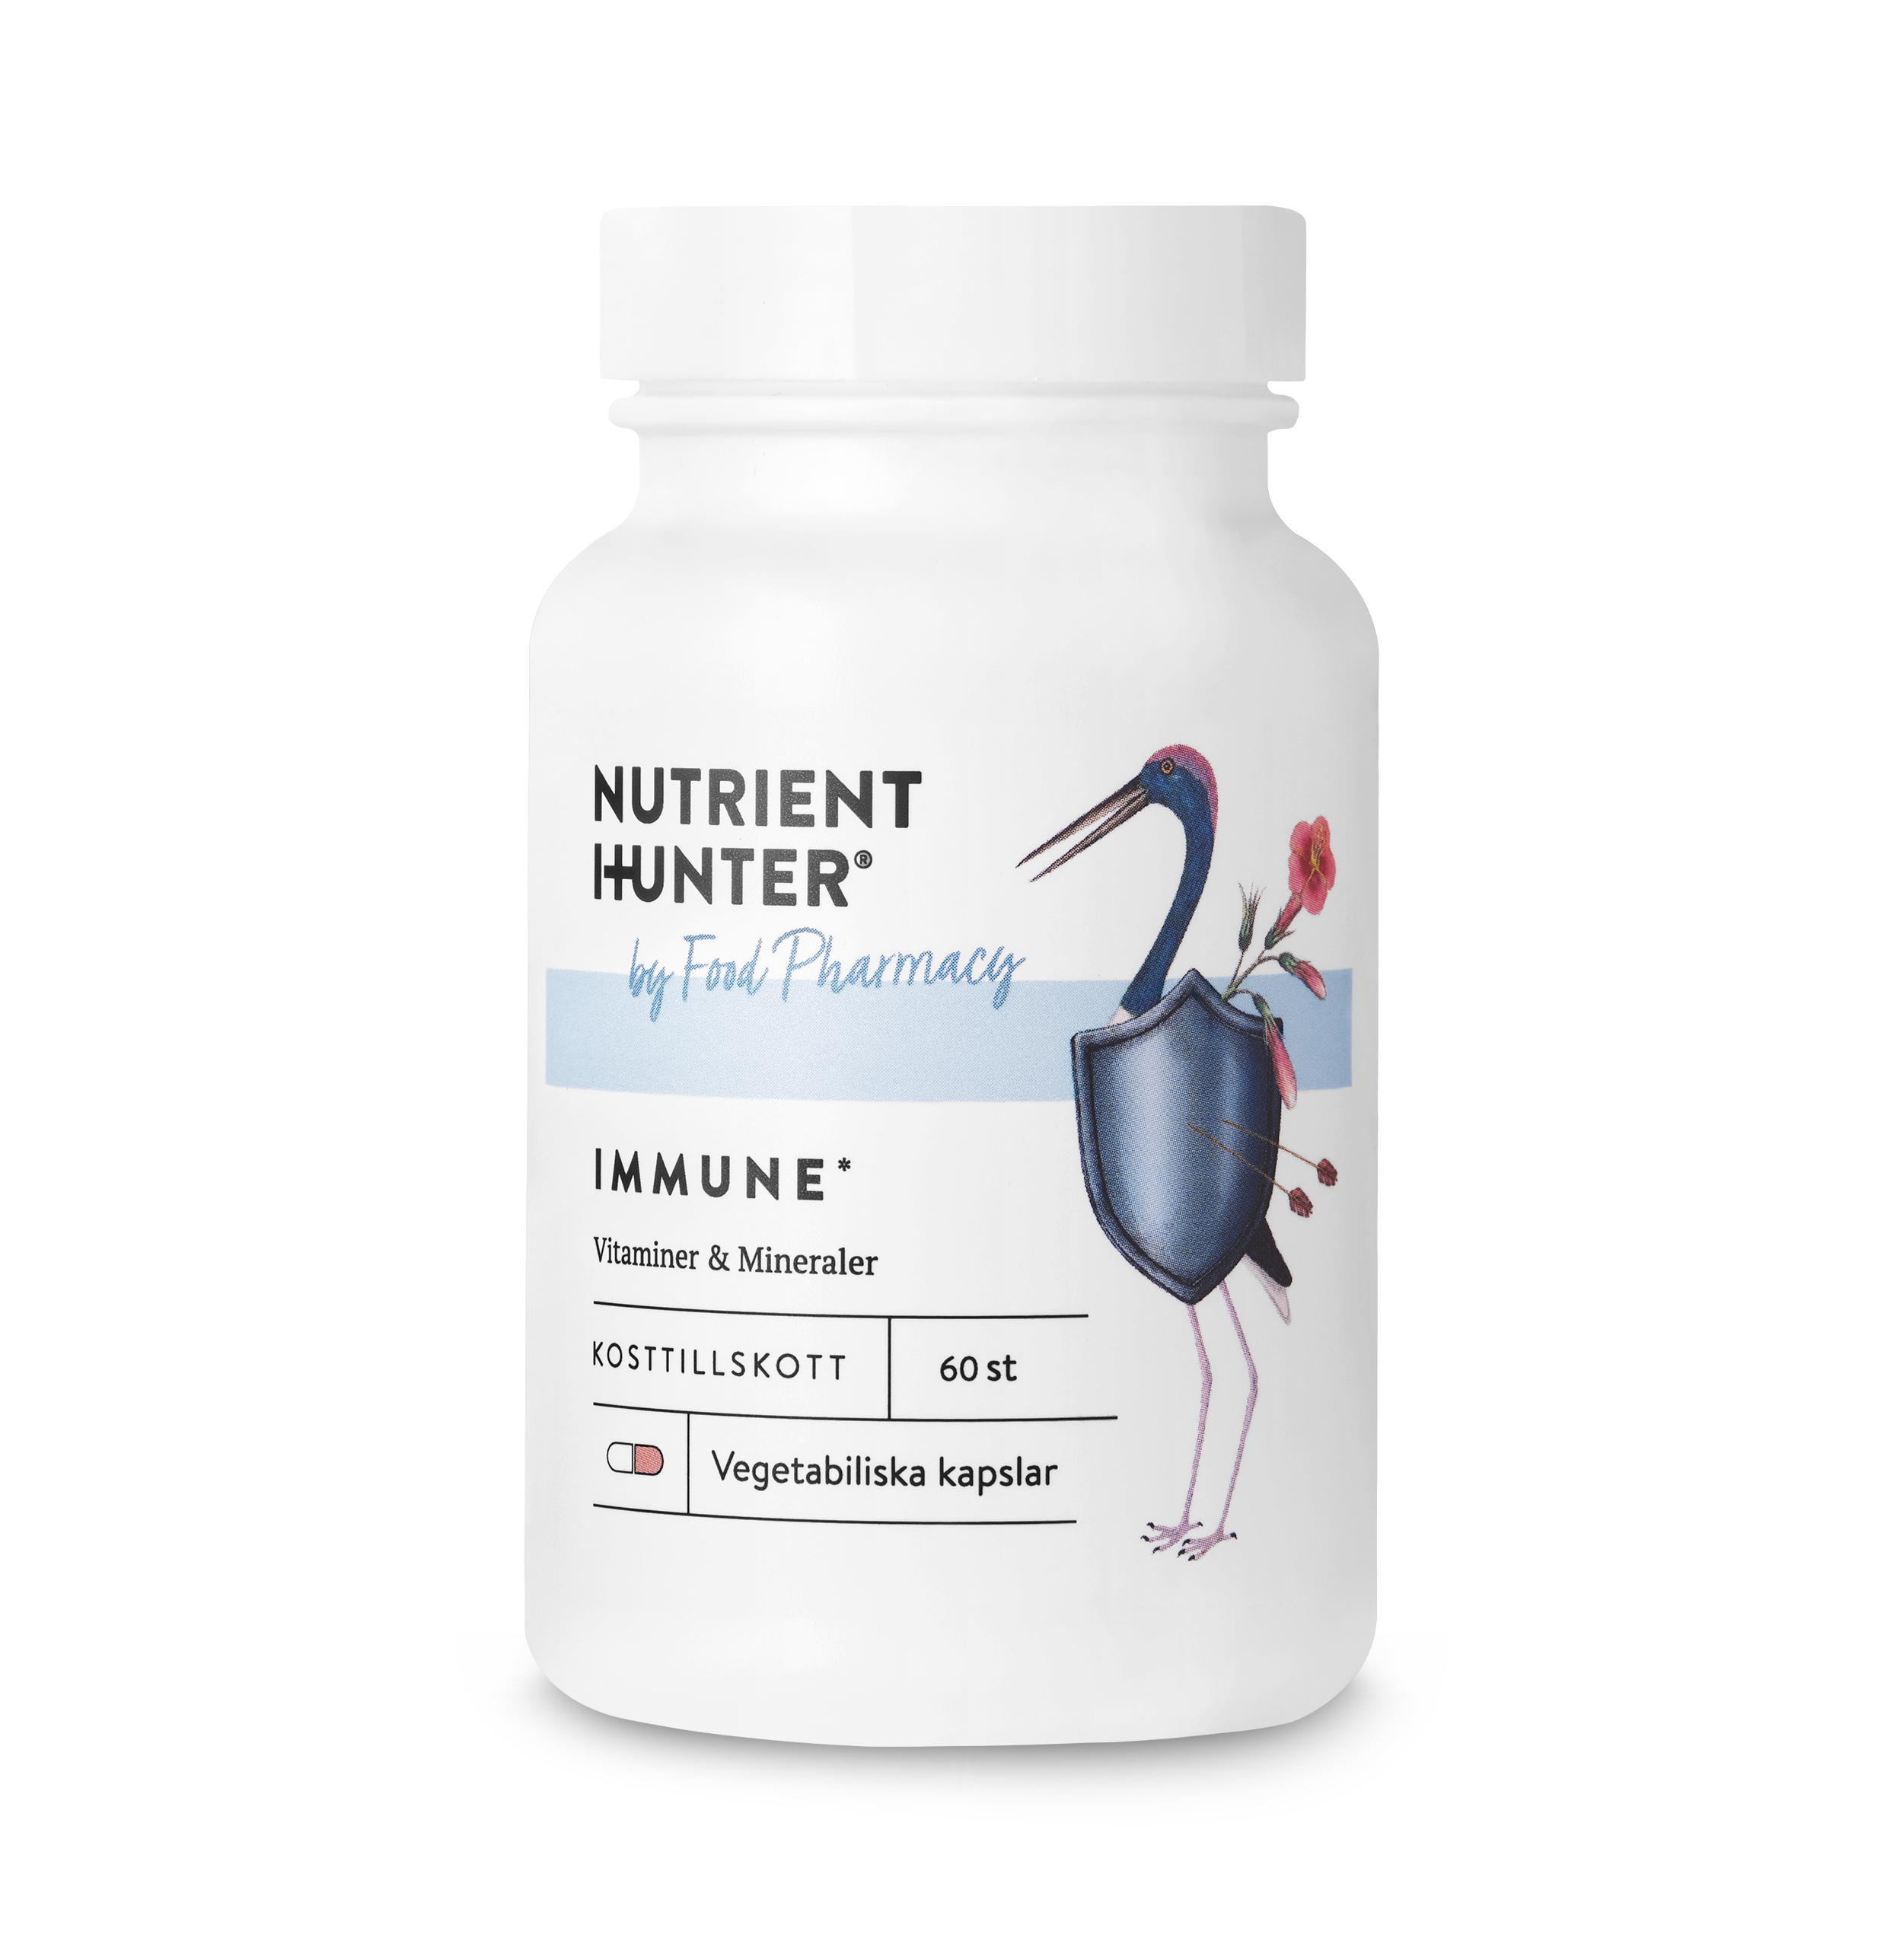 NUTRIENT HUNTER by Food Pharmacy Immune Vitaminer & Mineraler 60 kapslar